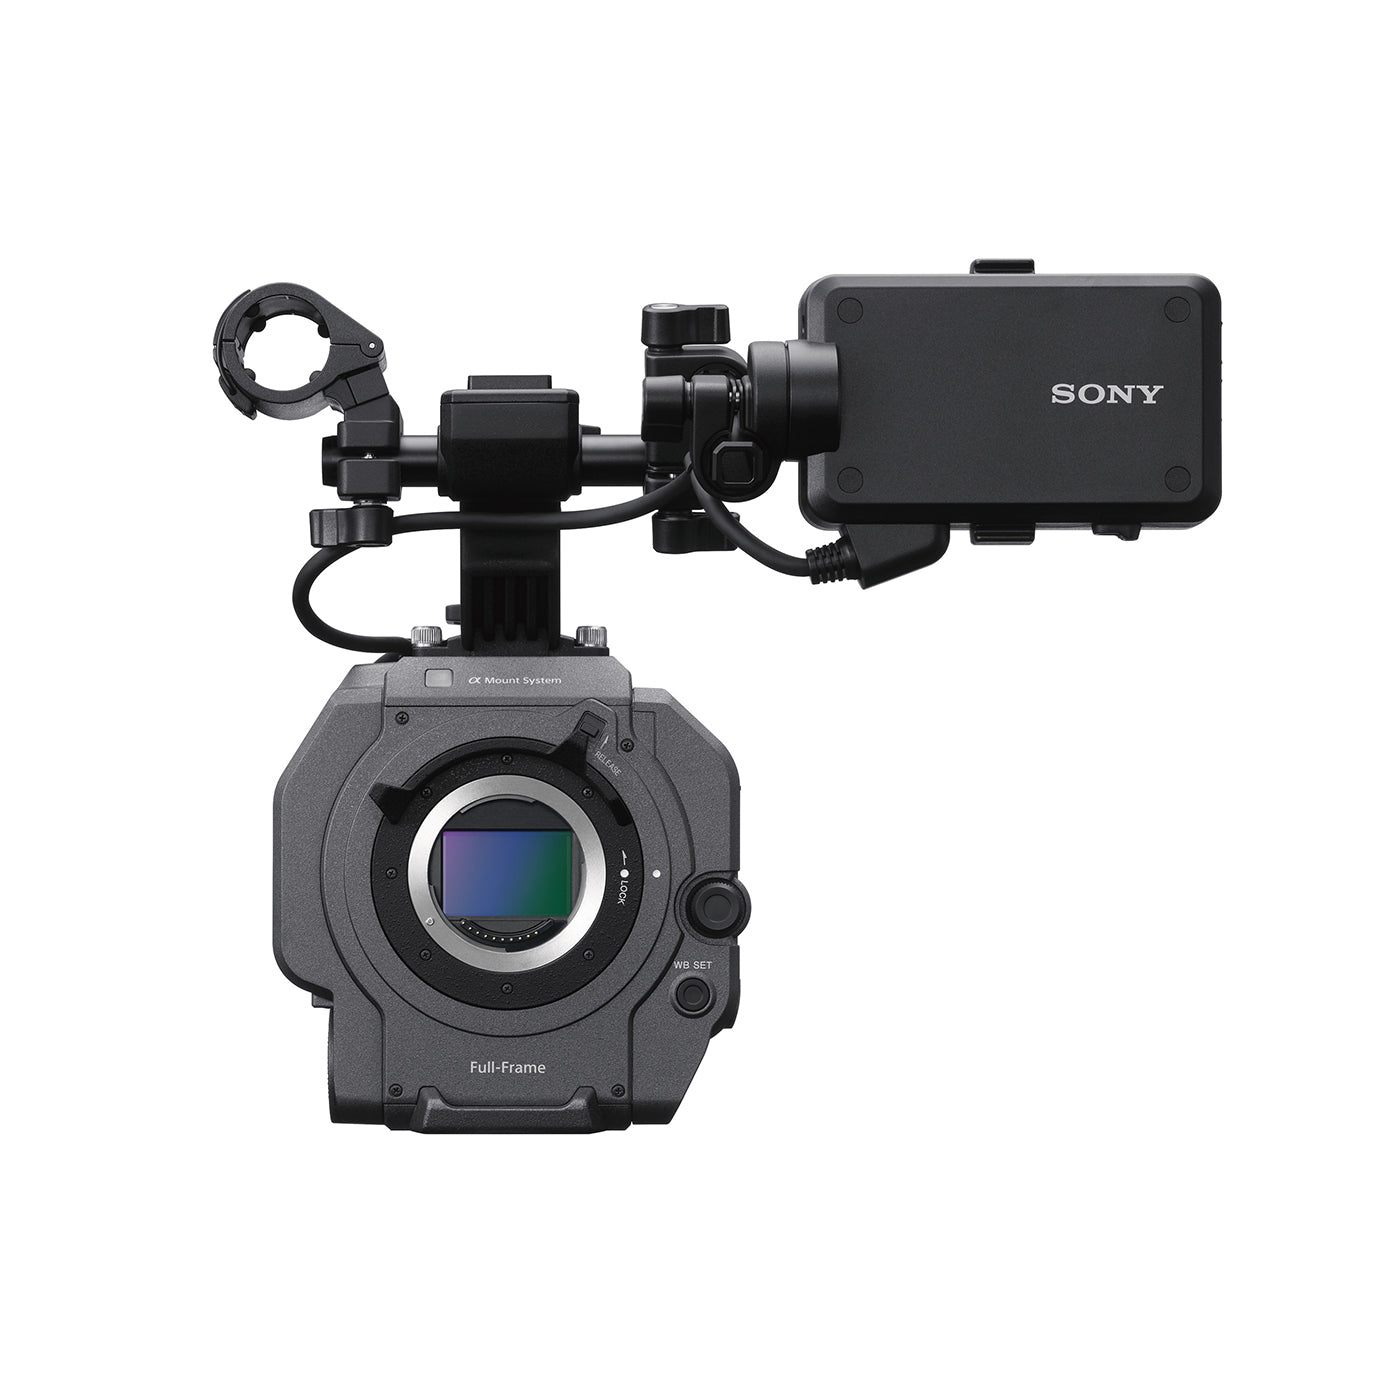 PXW-FX9 - Sony’s full-frame 6K sensor camera body Only